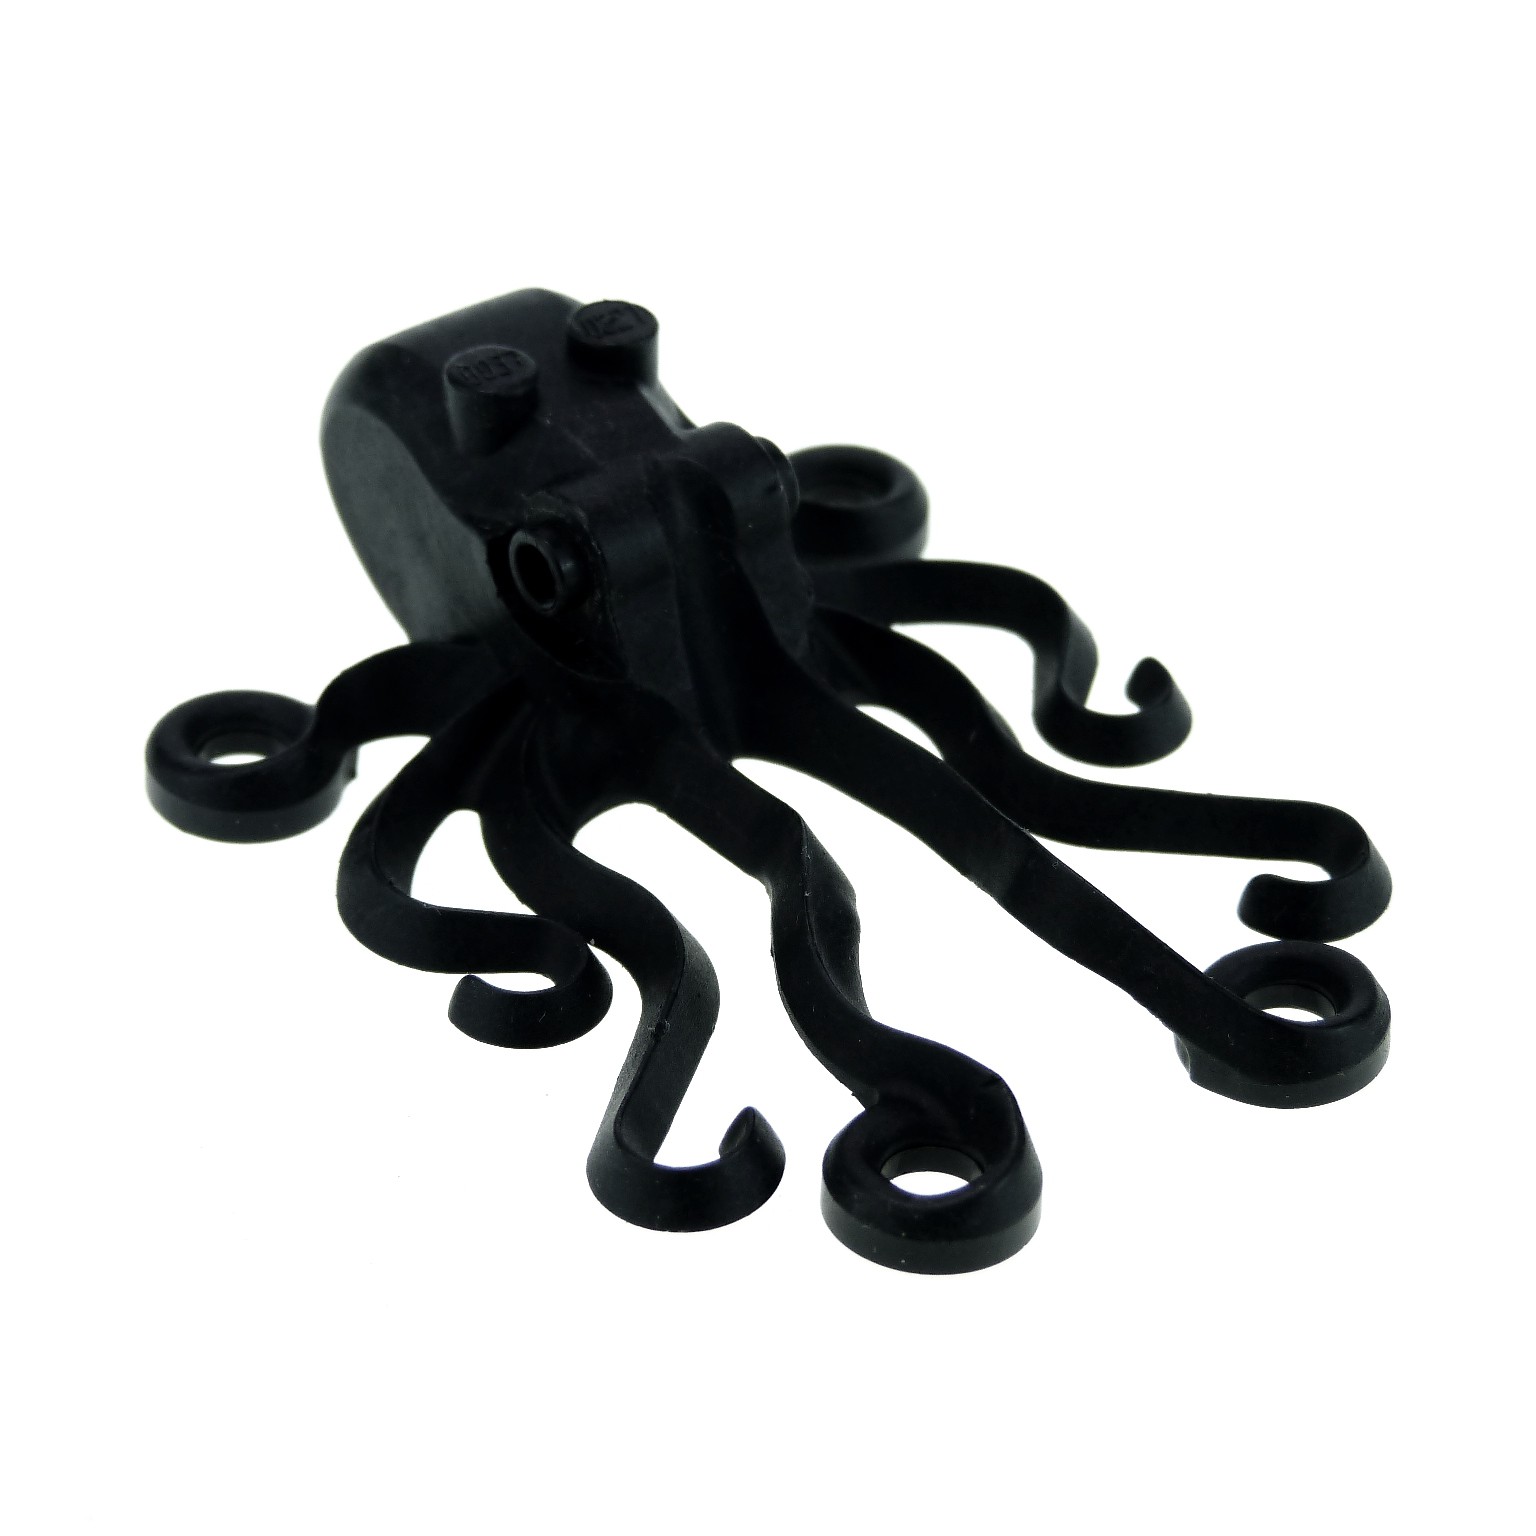 Lego Krake Oktopus Tintenfisch aus 6198 6441 schwarz 209 